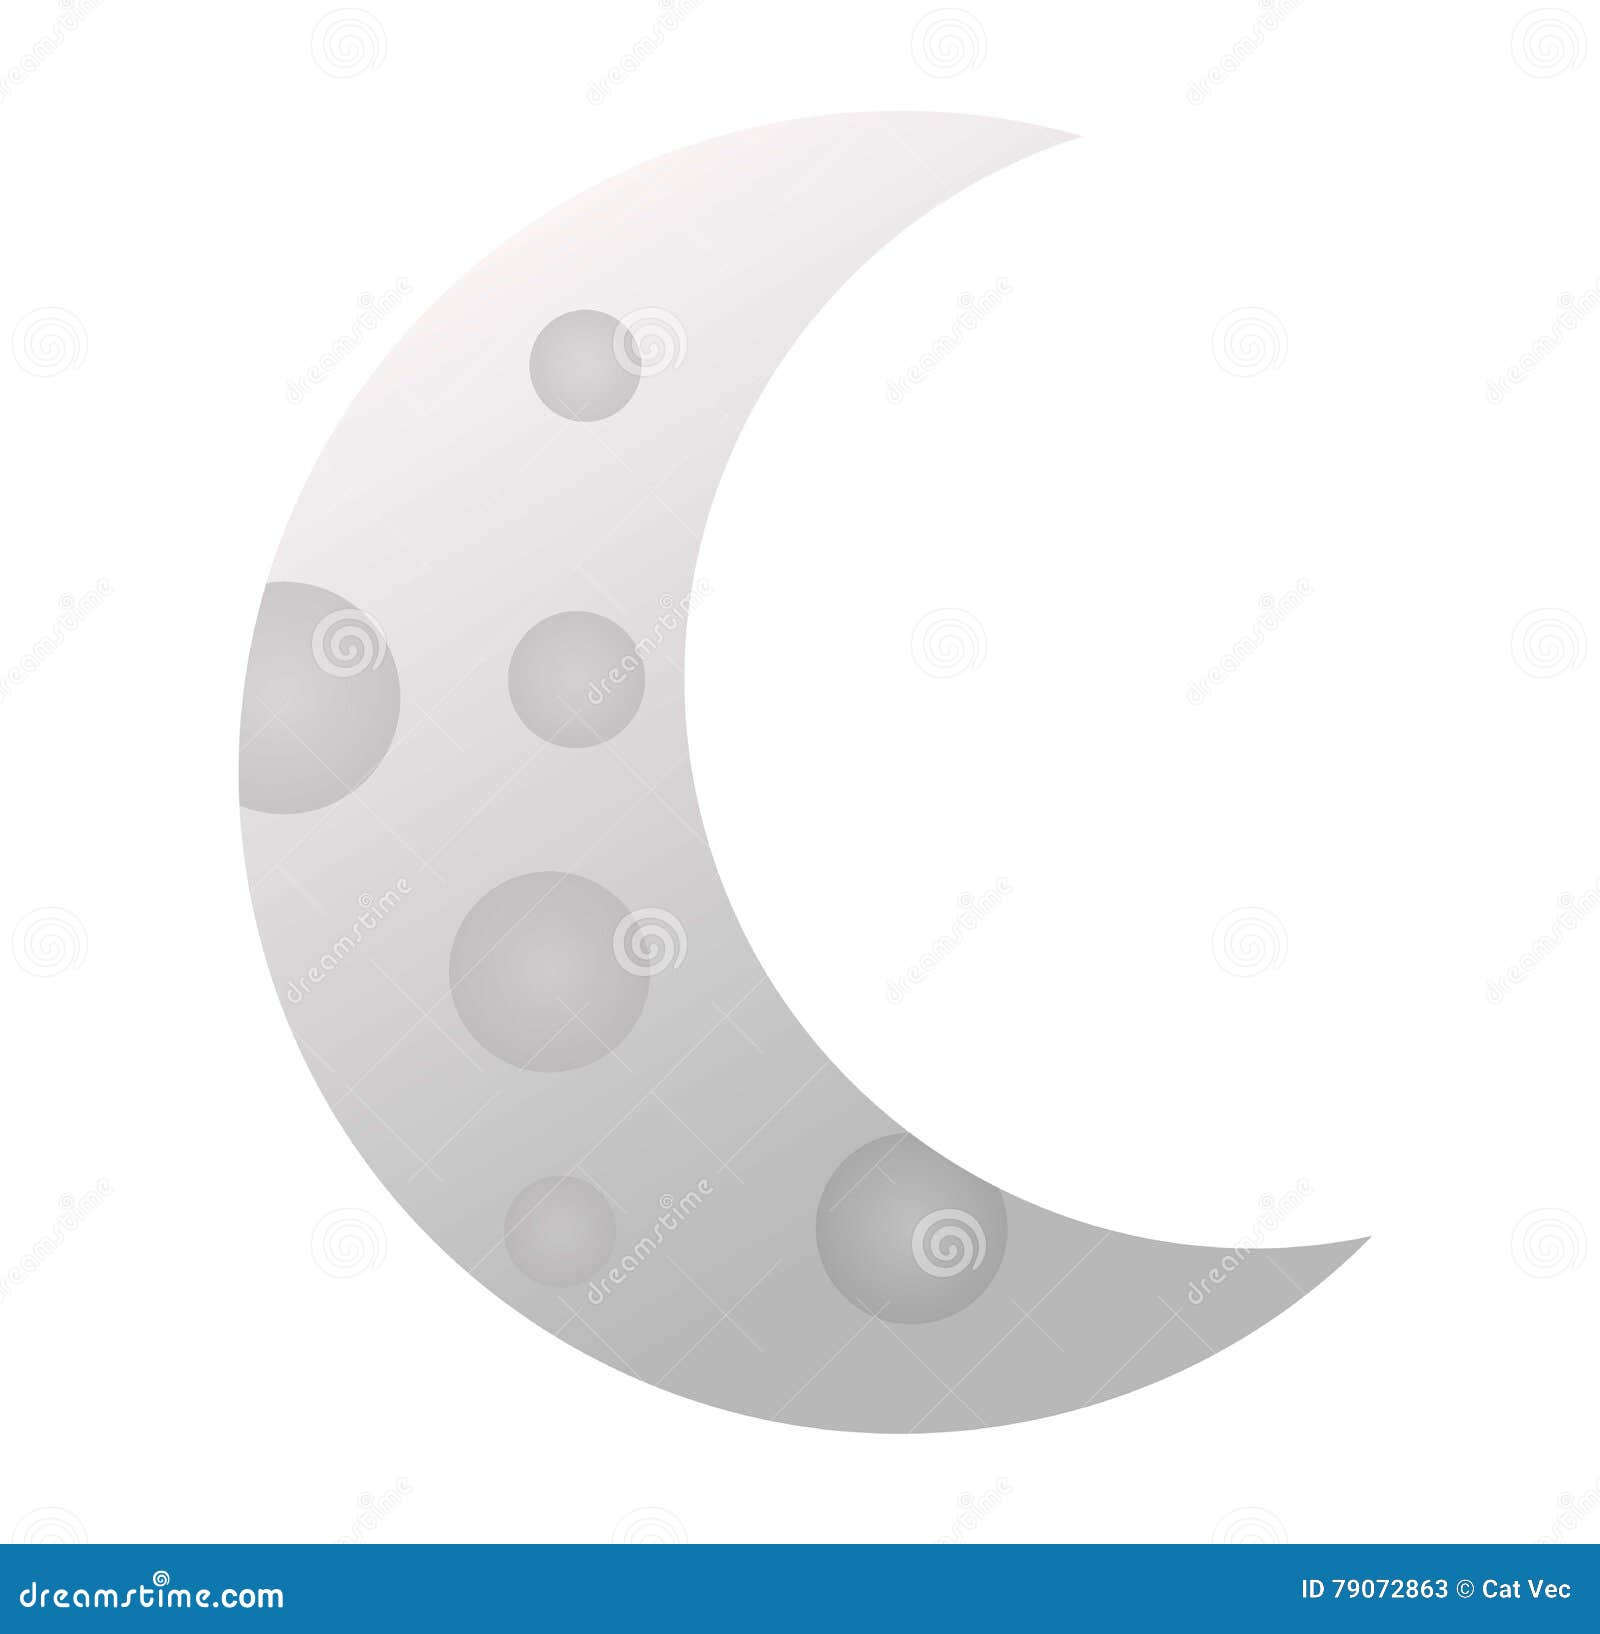 Луна месяц предложение. Месяц вектор. Луна месяц полумесяц фэнтези Смайл зловещий. Торч стиль виде Луны и месяца. Месяц и Луна это синонимы.